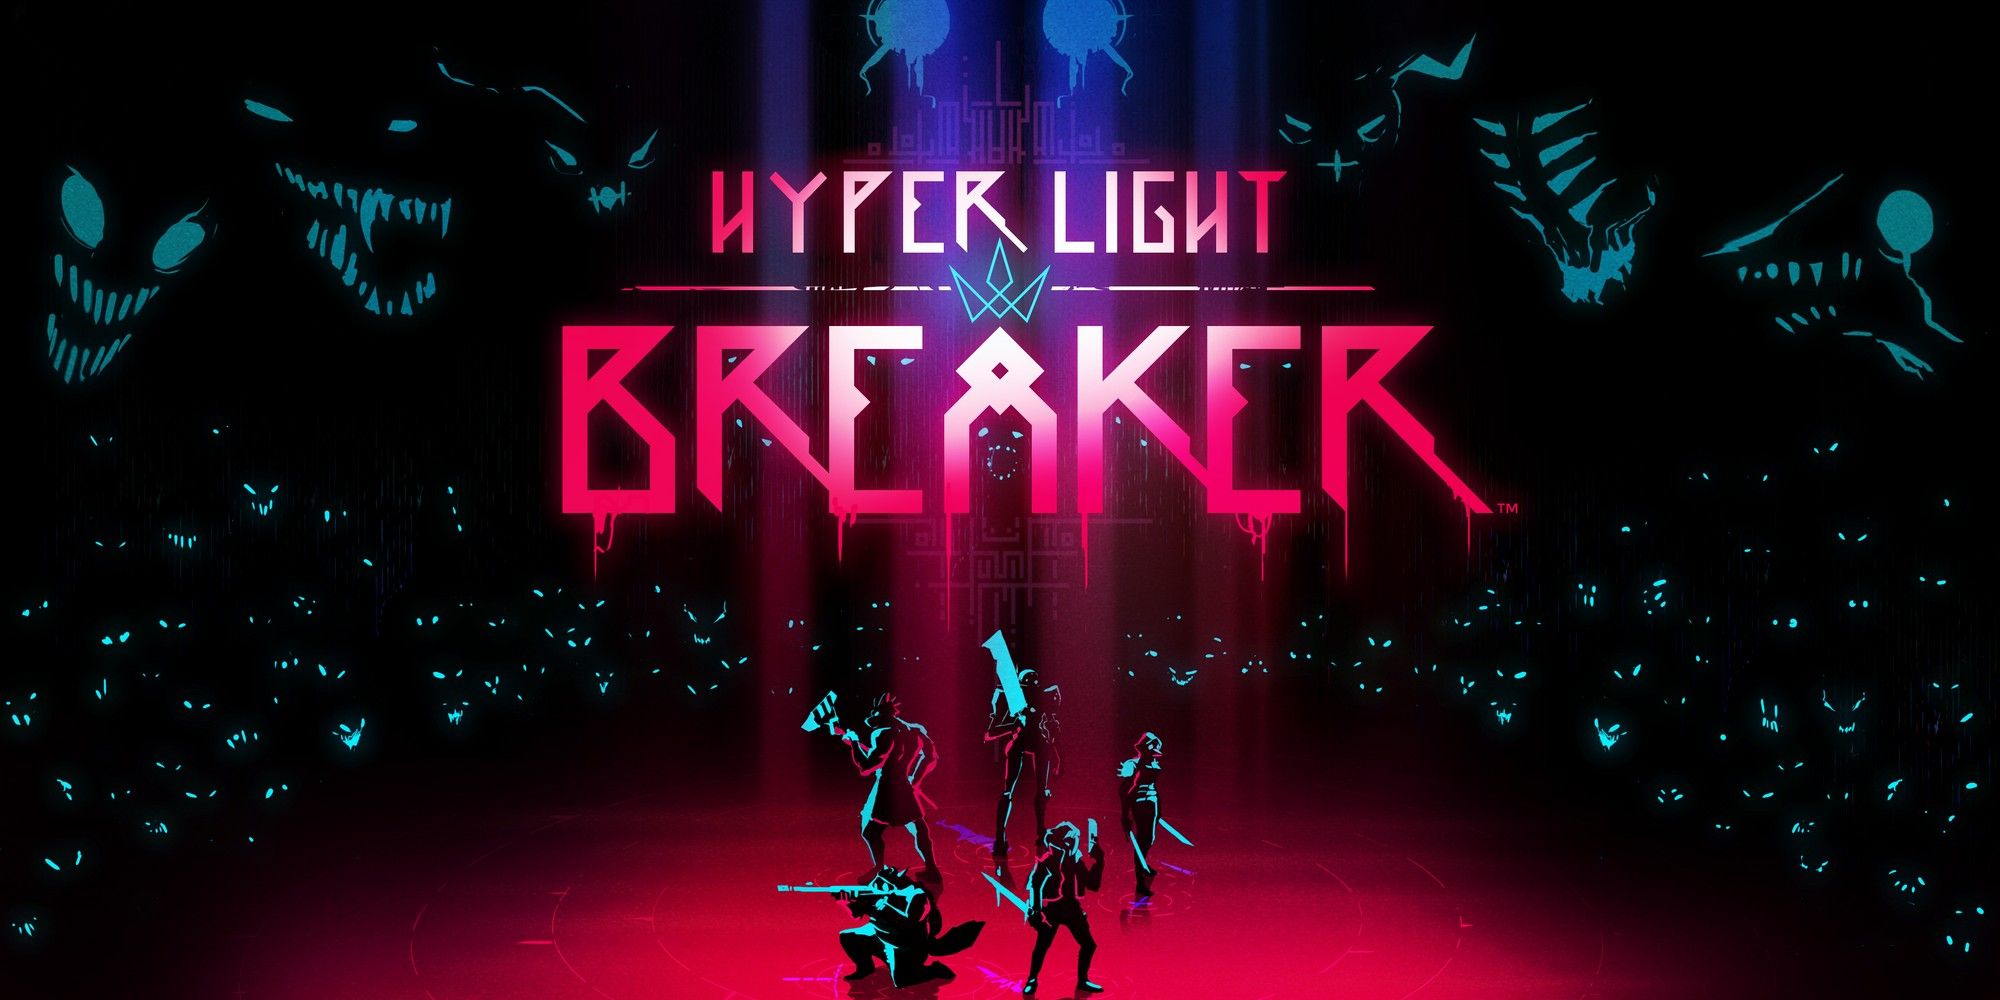 hyper light breaker